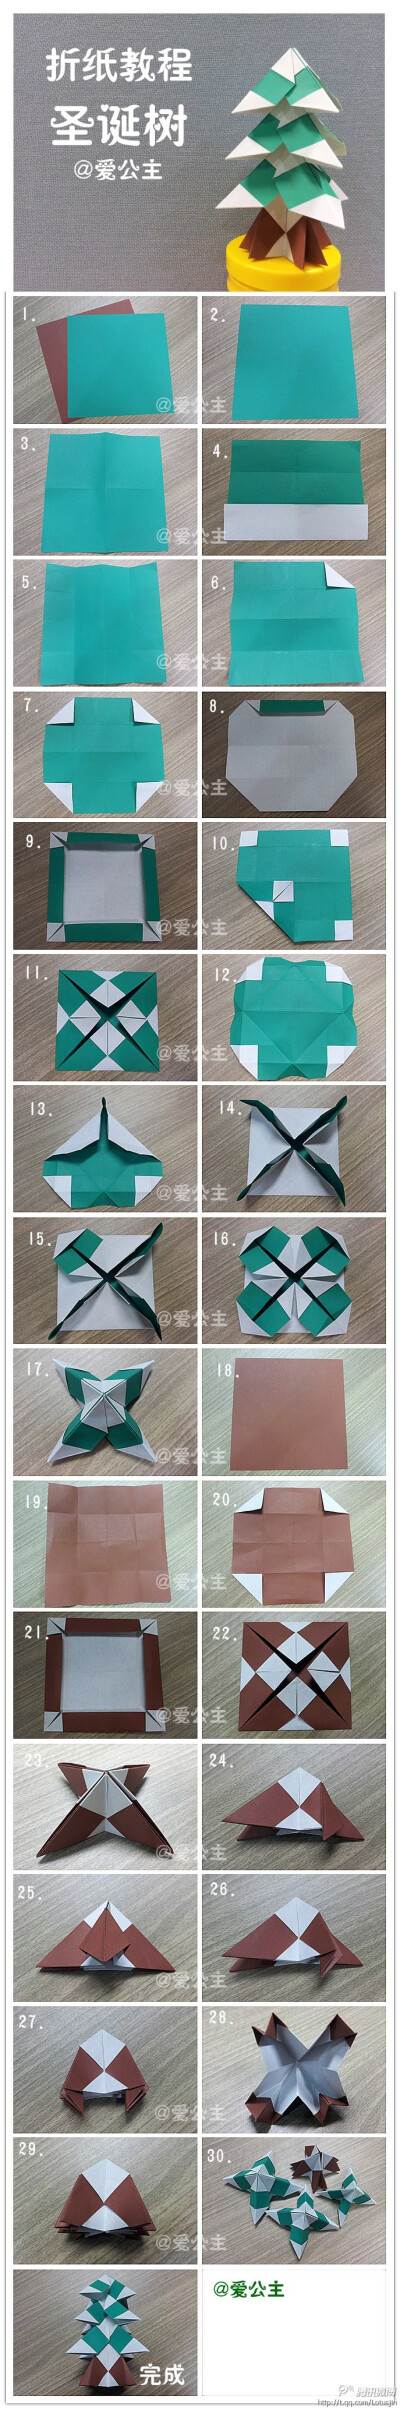 手工达人的折纸教程，图片分享自@爱公主